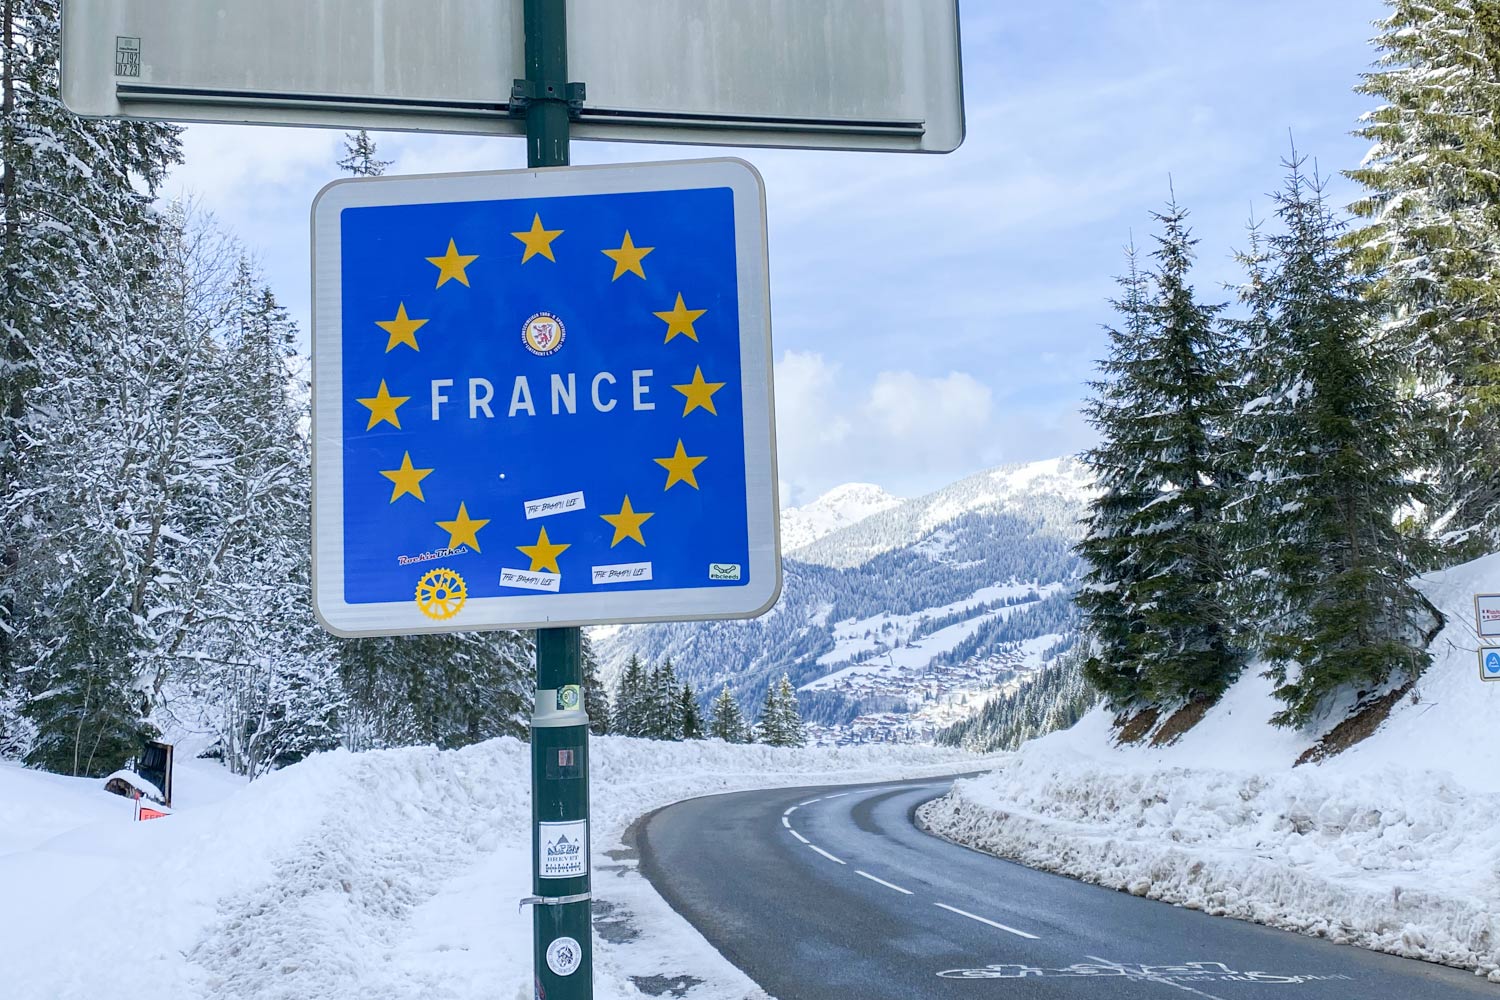 Wintersport in Frankrijk tol betalen op autosnelwegen